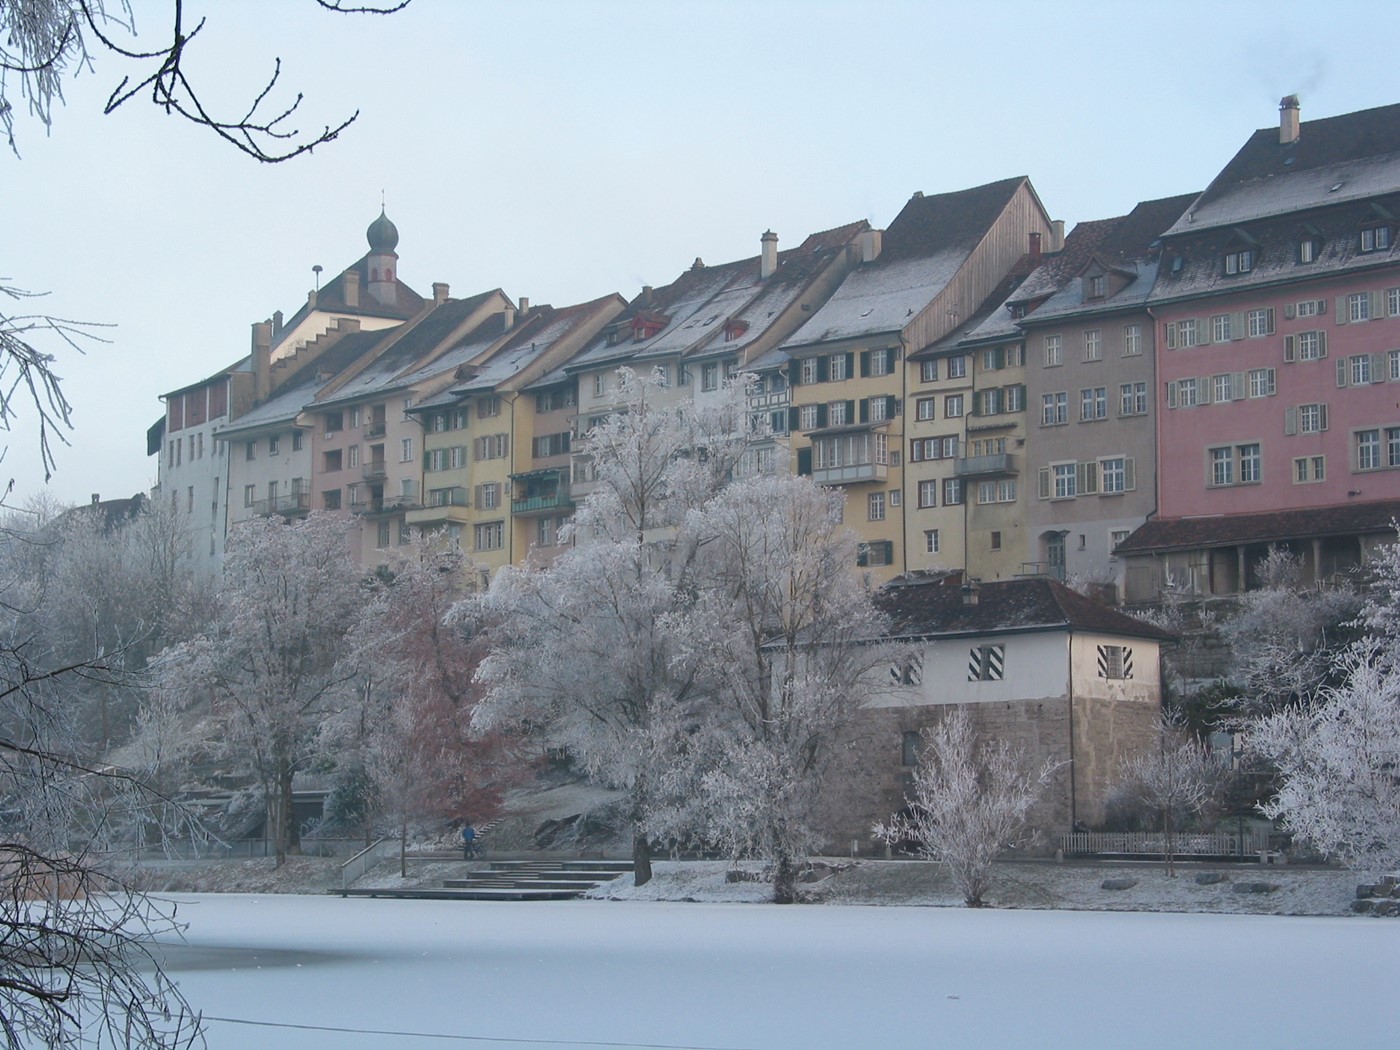 Winterfassade am Weiher (Bild: zVg)